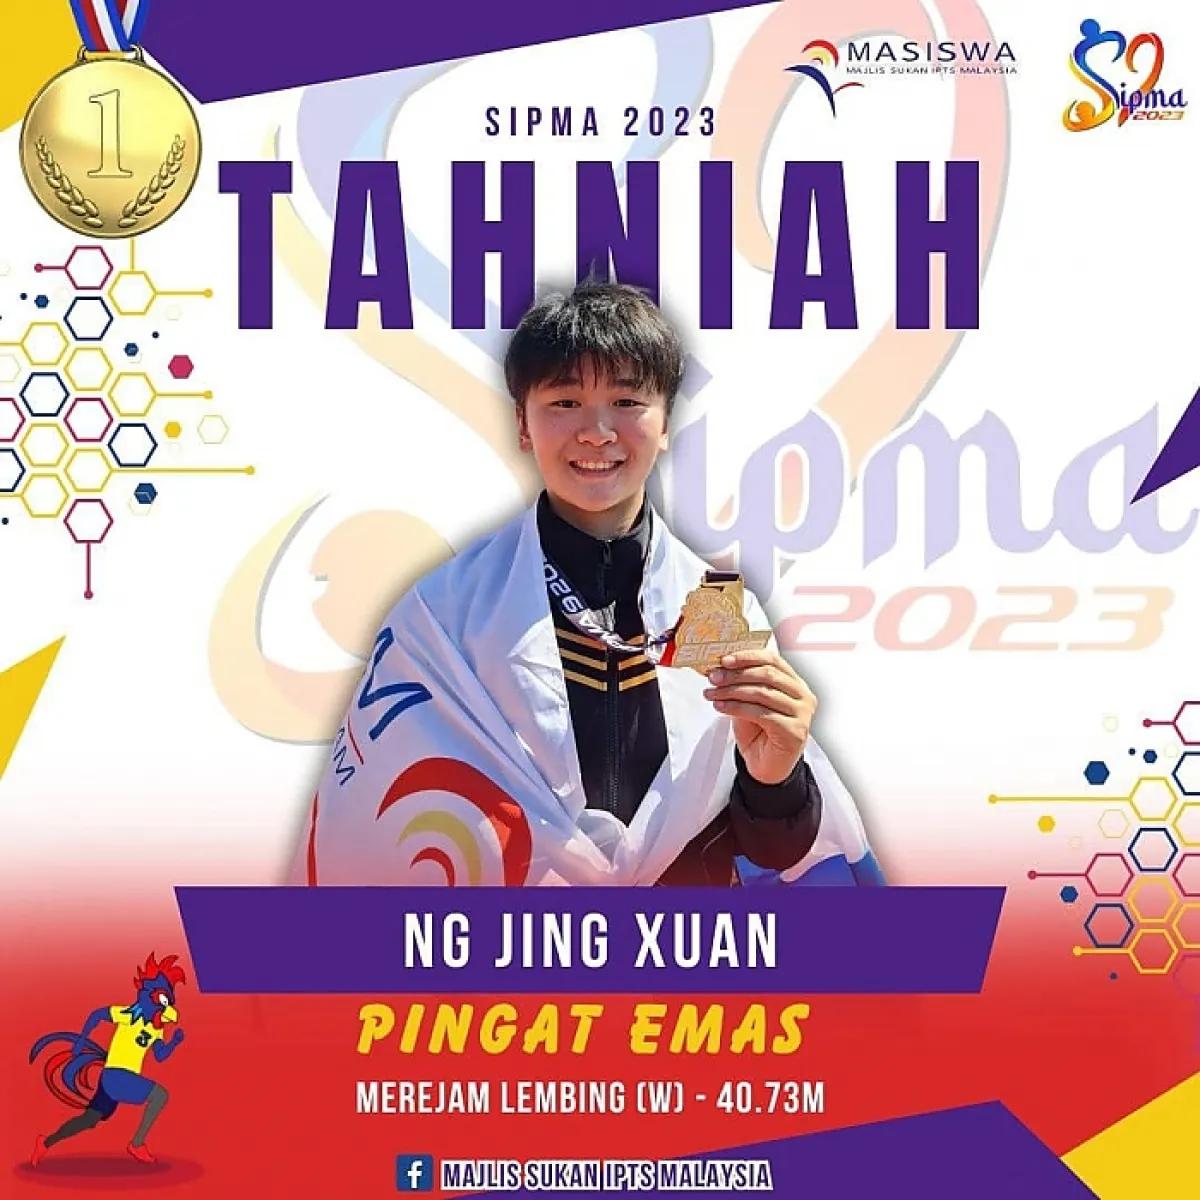 Ng Jing Xuan, gold medal winner